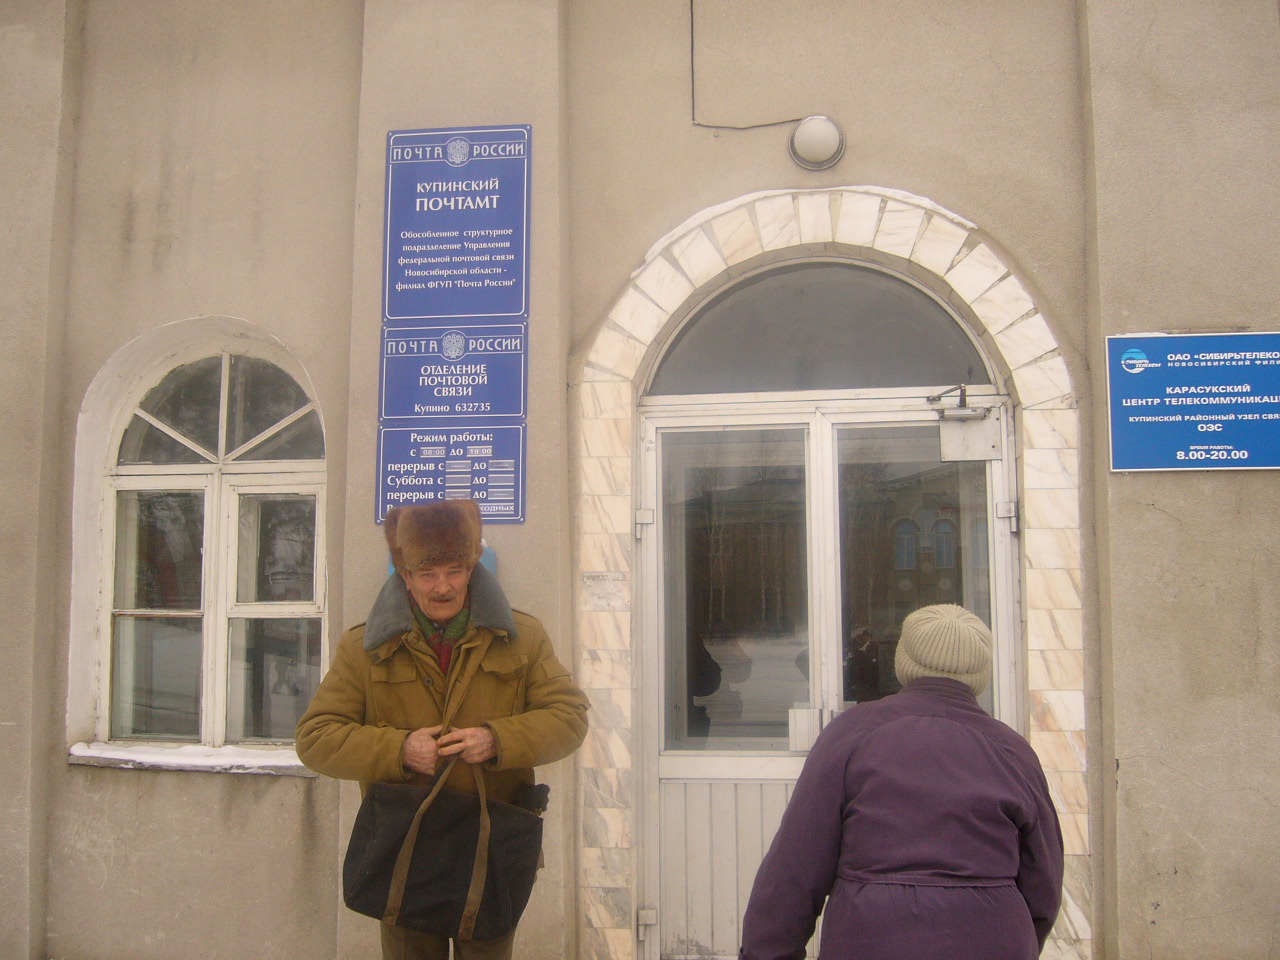 ФАСАД, отделение почтовой связи 632735, Новосибирская обл., Купинский р-он